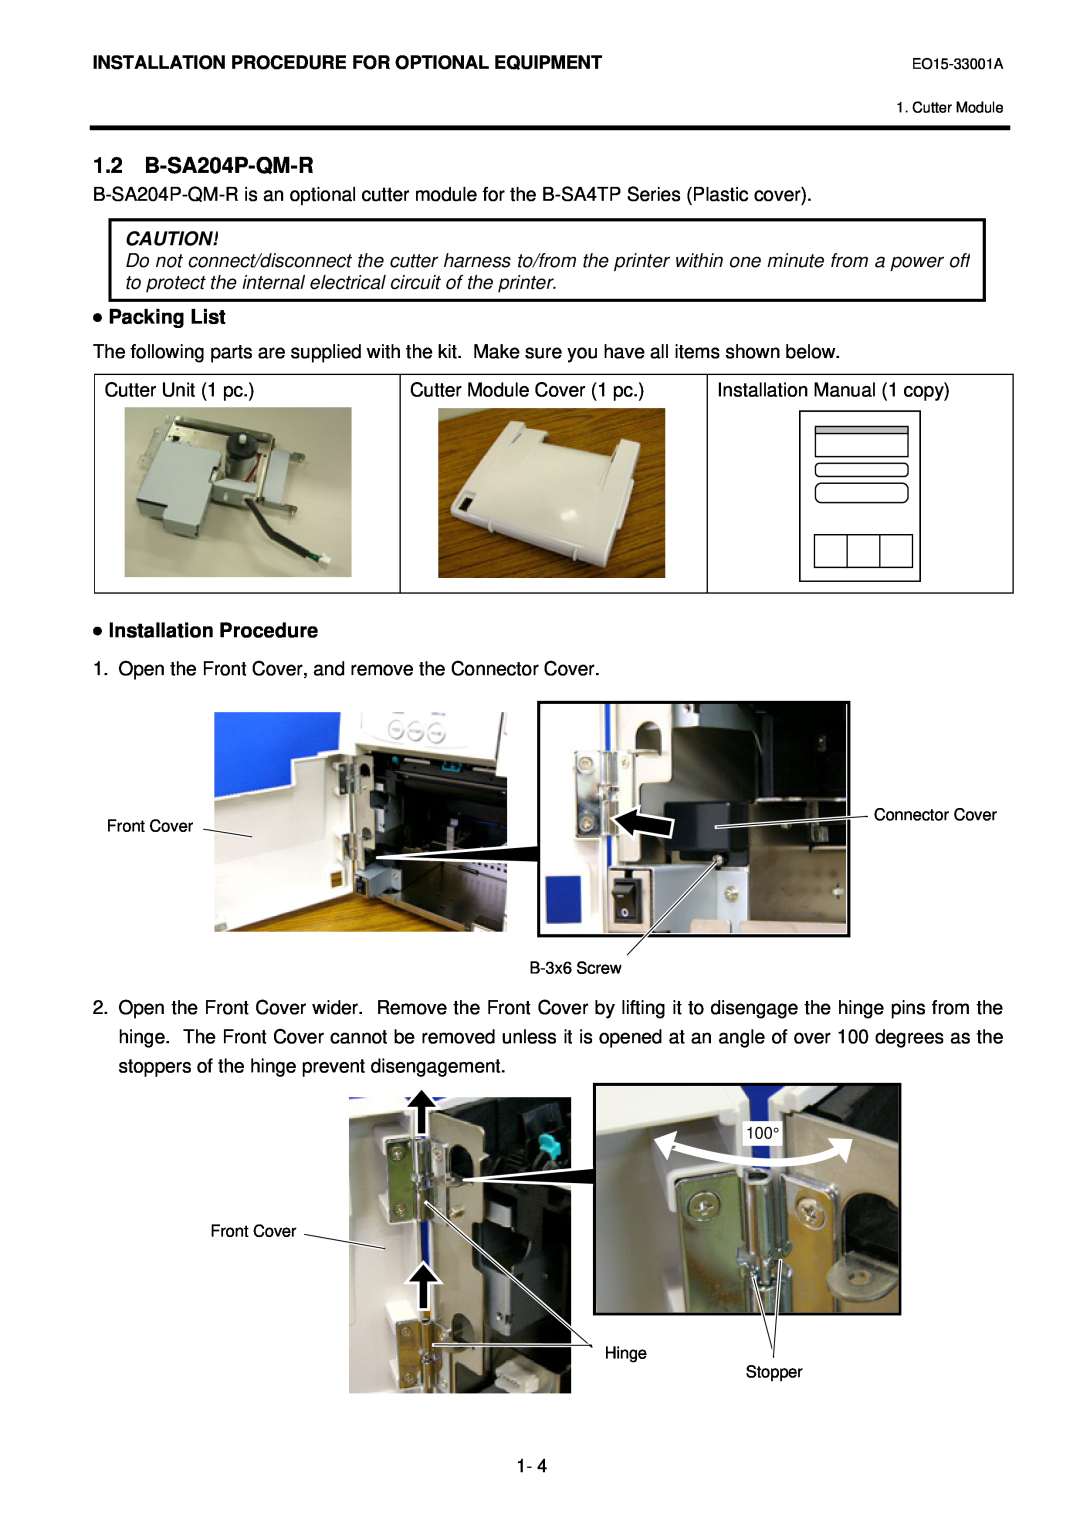 Toshiba B-SA4T installation manual B-SA204P-QM-R, Packing List, Installation Procedure 